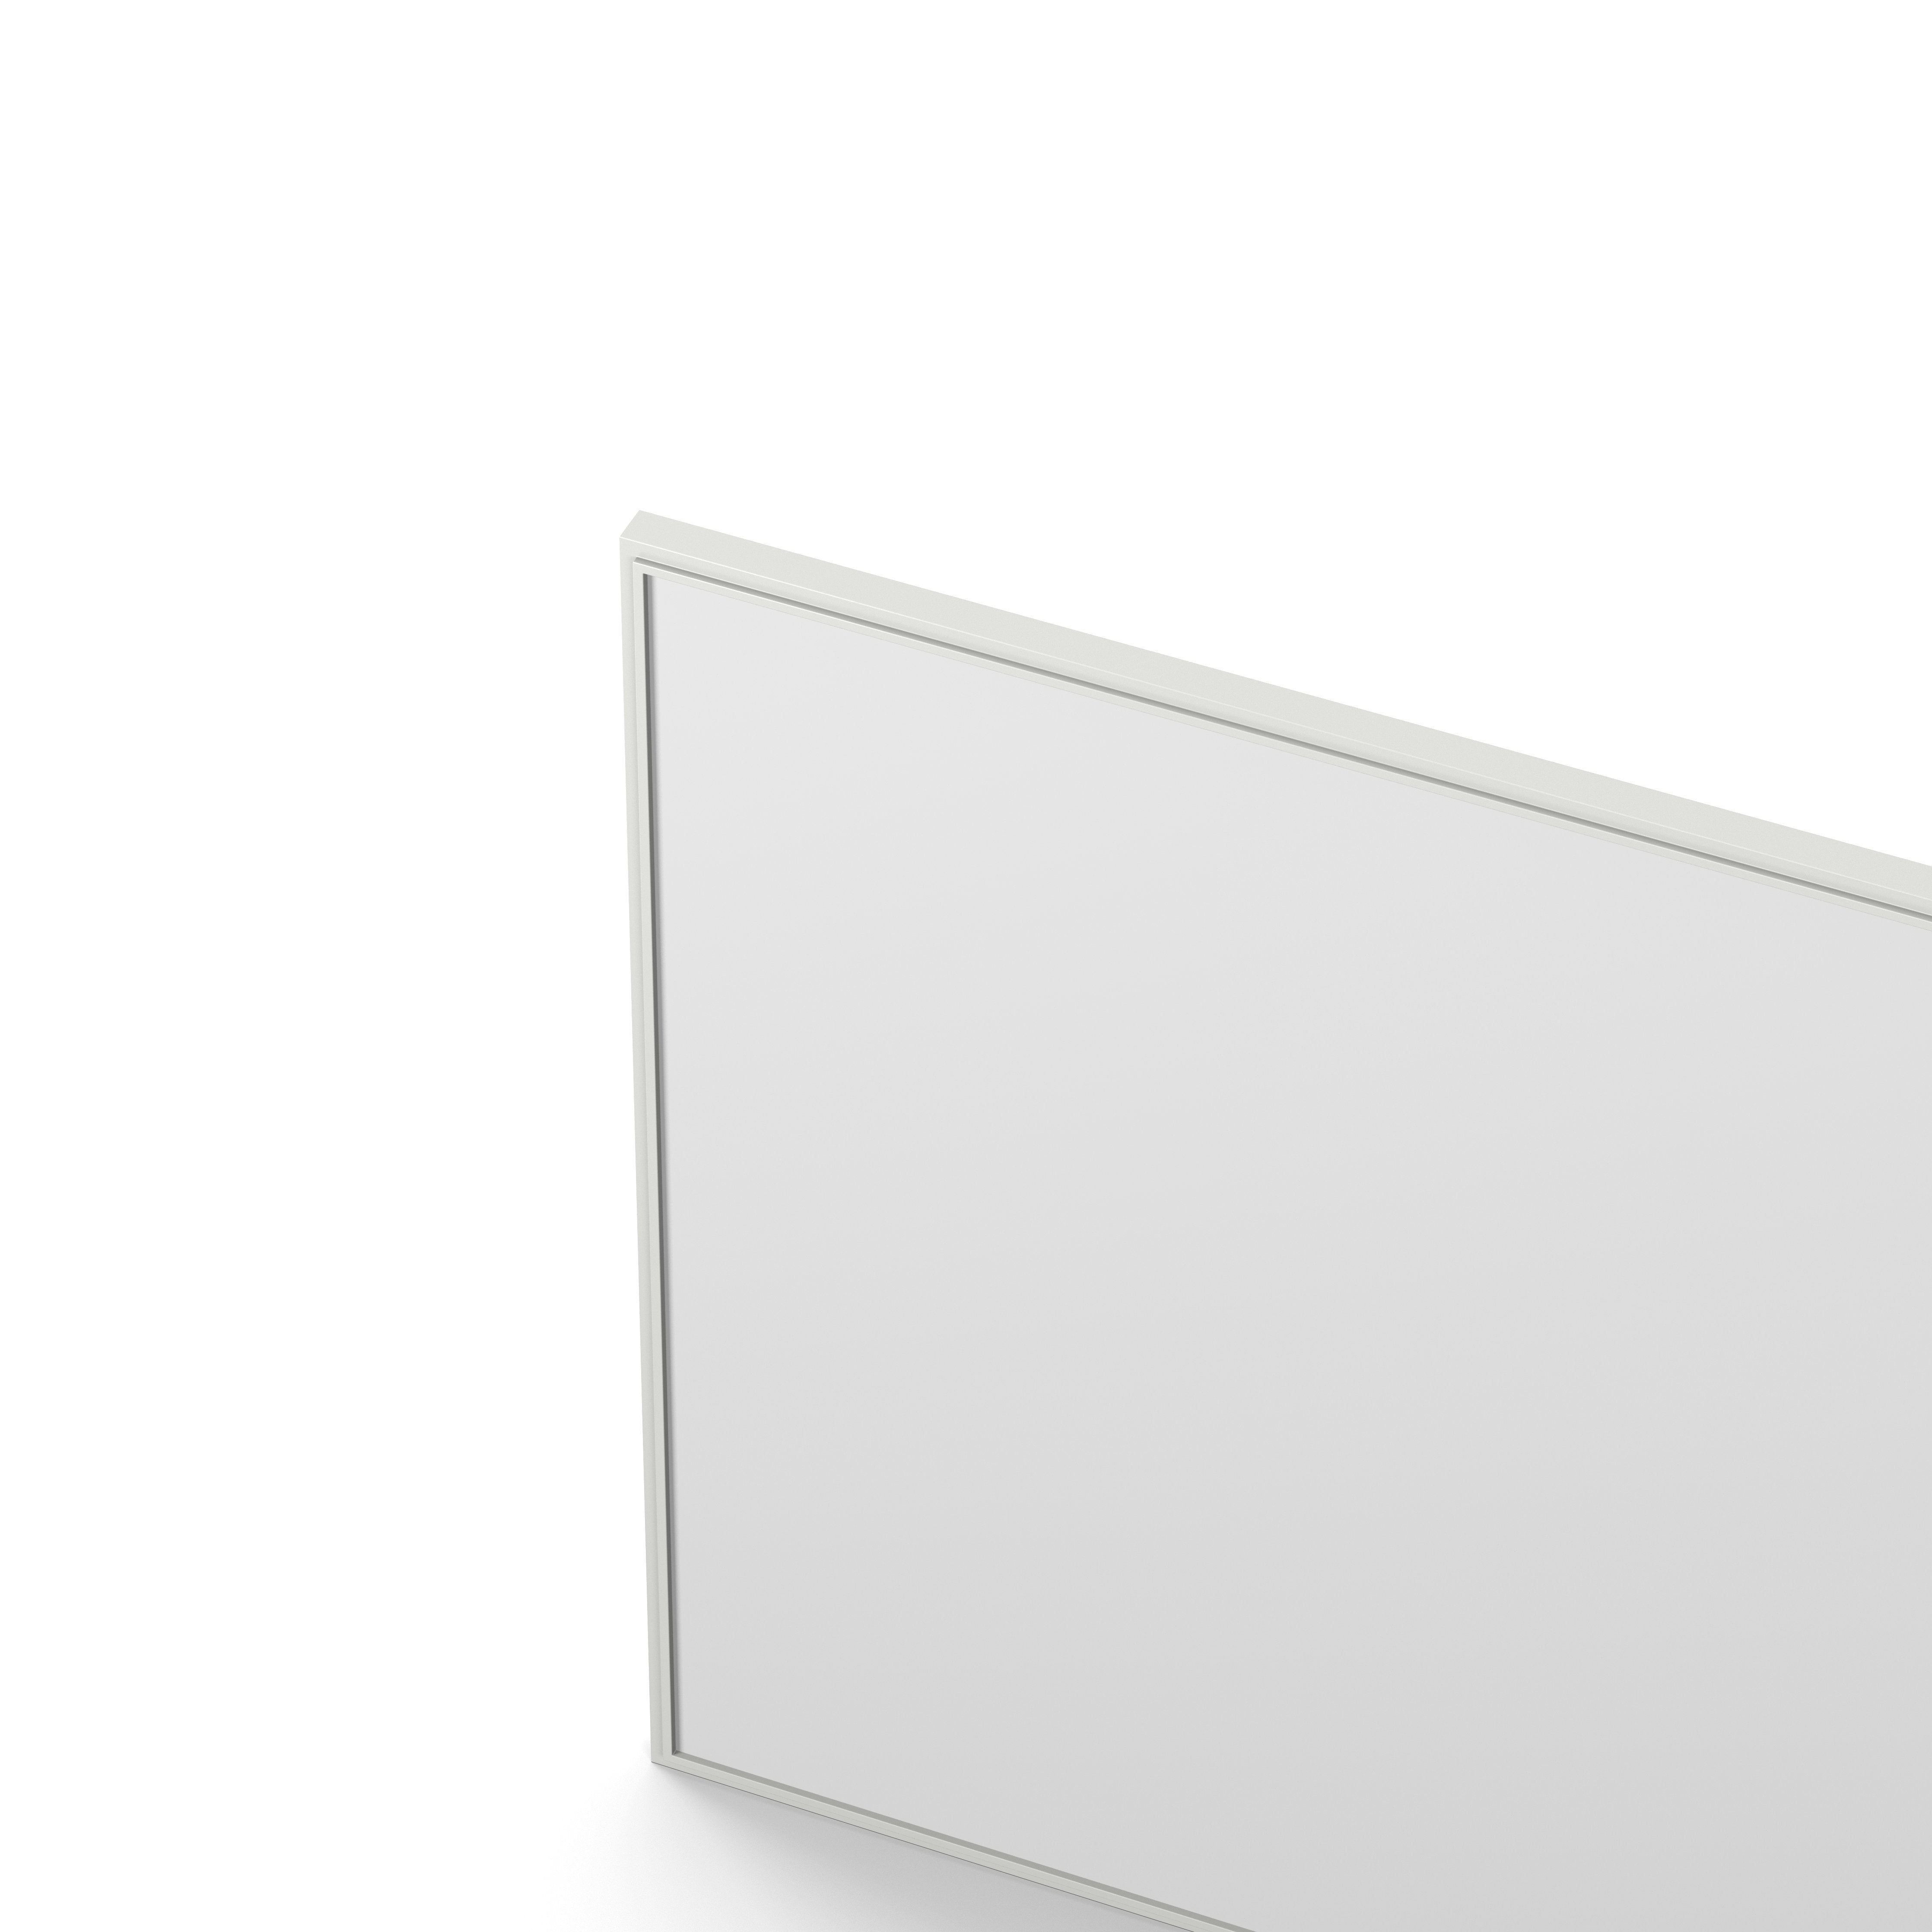 Englesson Speglar Cube Spegel Kvadratisk #färg_Edge White #Colour_Edge White